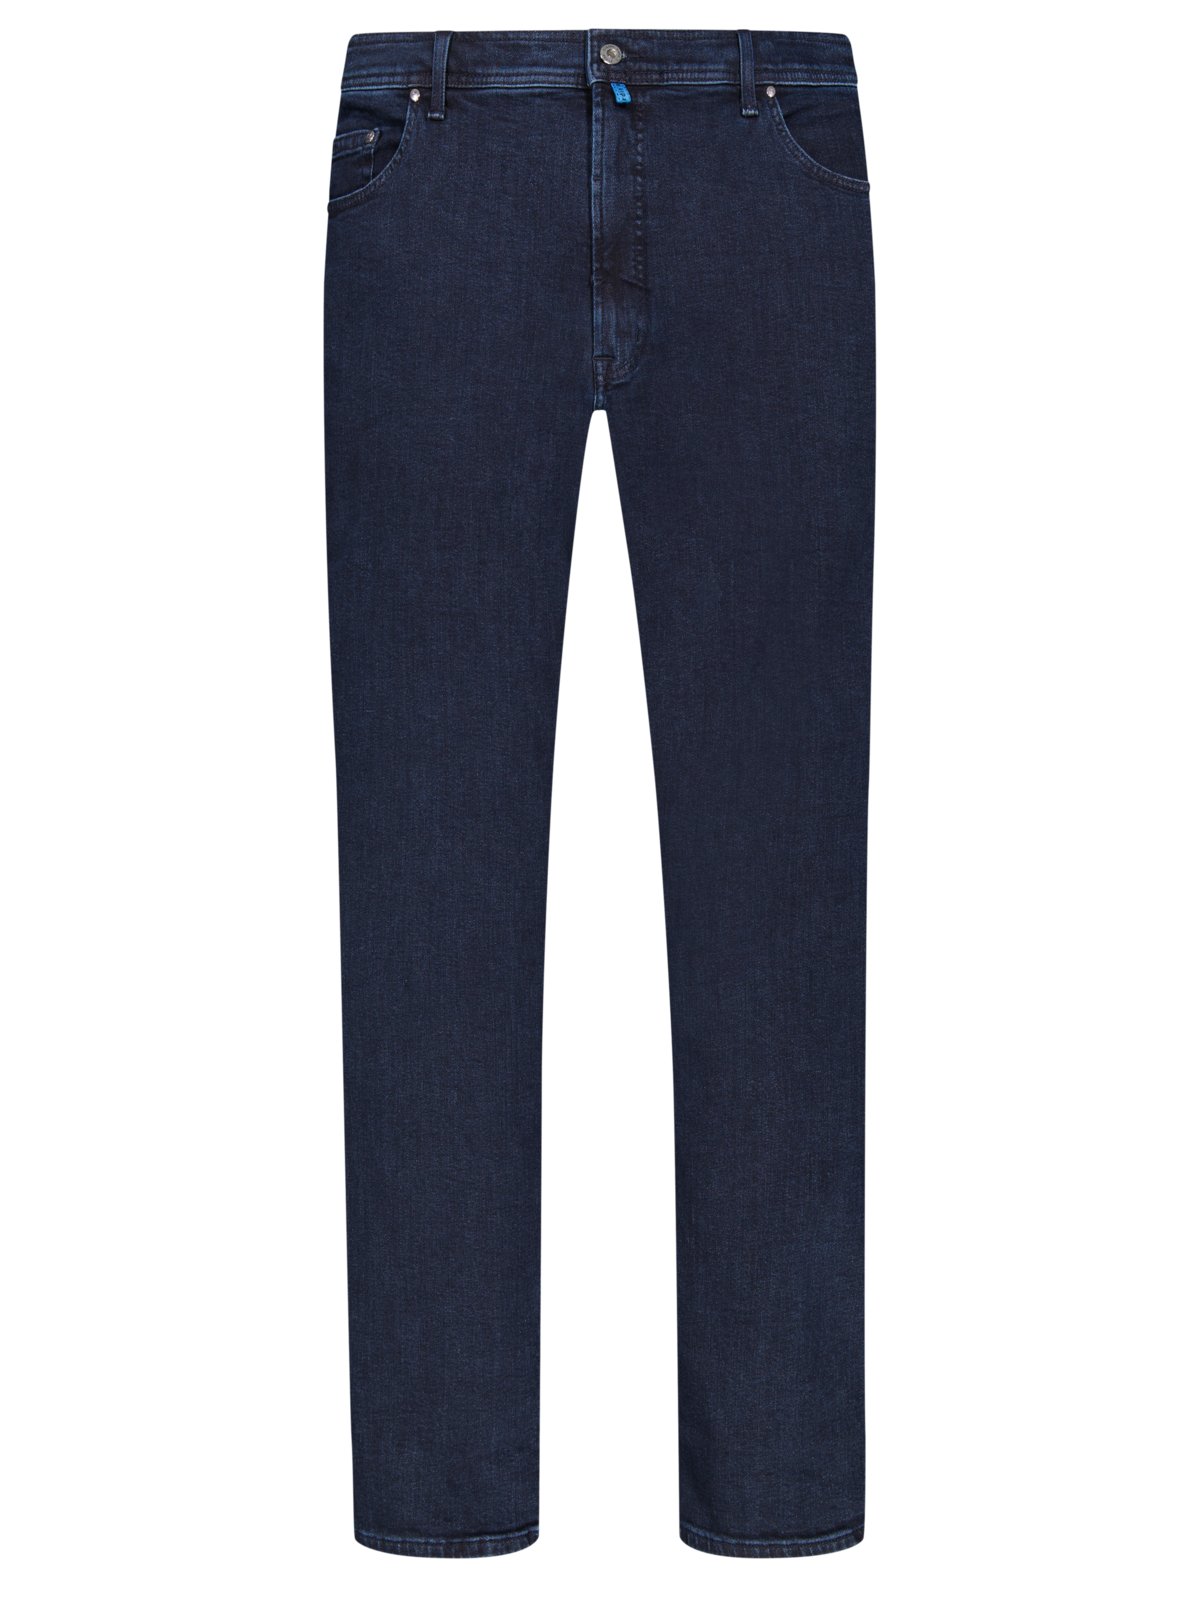 Pierre Cardin Futureflex Jeans in dezentem Washed-Look